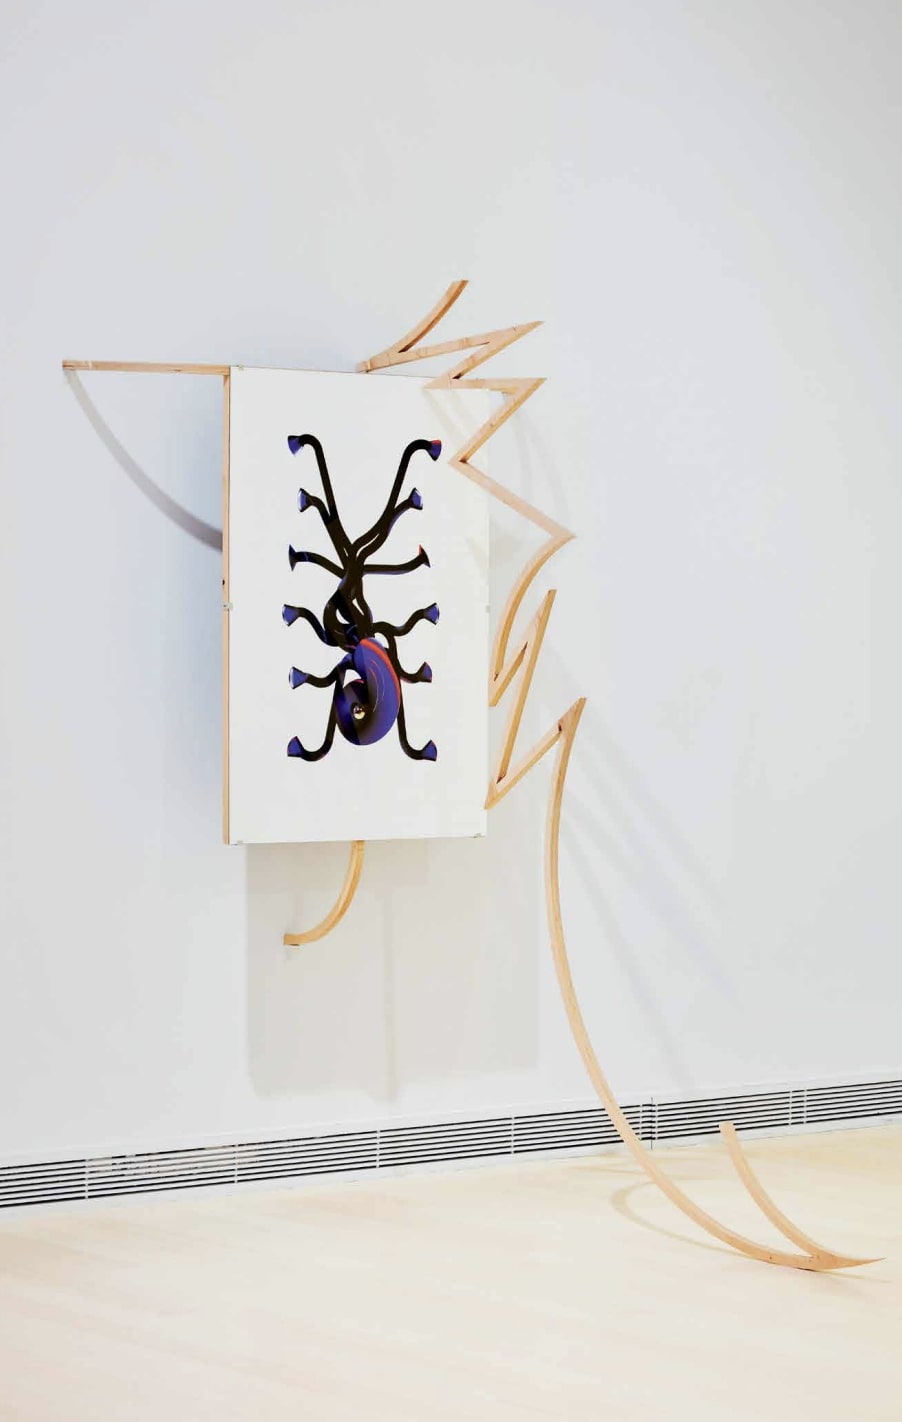 Molnár Zsolt: Vineyard Sprayer (Szőlőpermetező), 2019, giclée print, papír, kollázs, rétegelt lemez, plexi, 171 × 198 × 150 cm, fotó: © Zana Krisztián / HUNGART © 2021